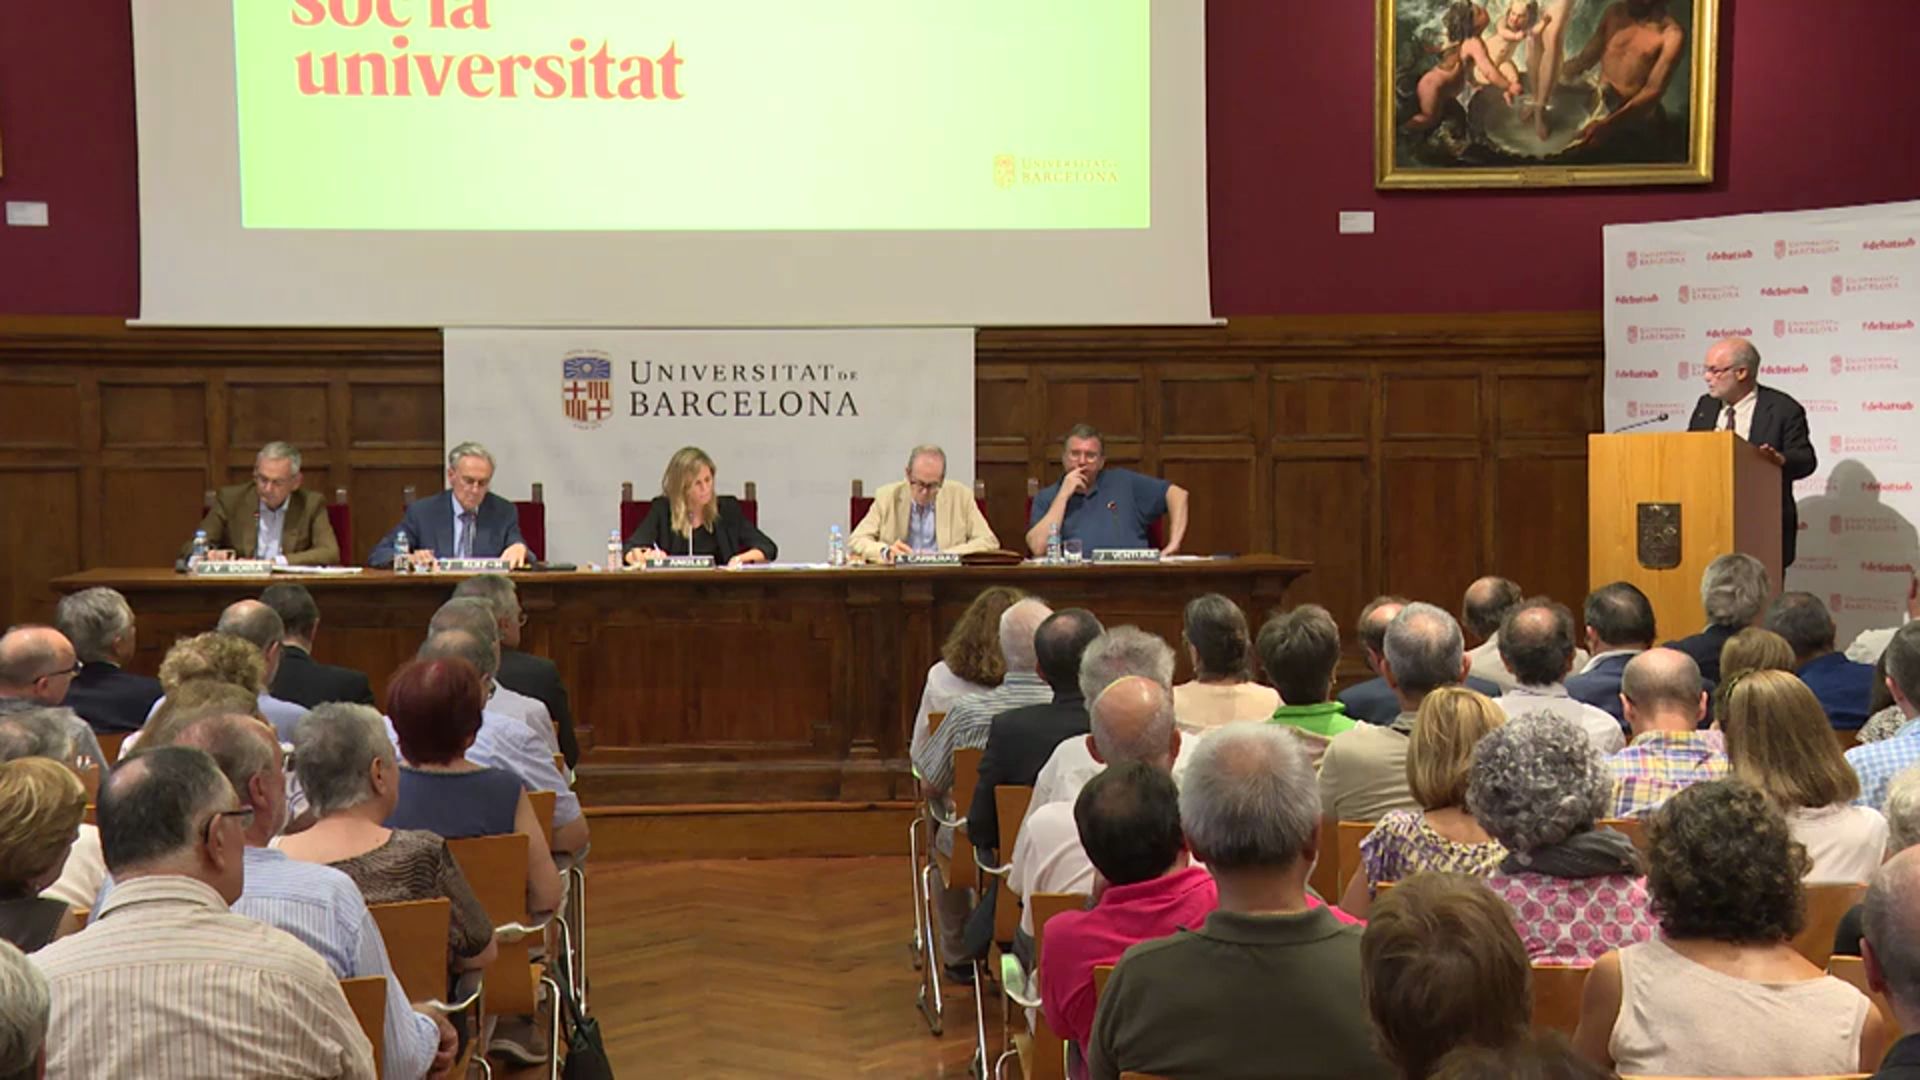 Debats UB: Catalunya i Espanya. Els factors econòmics i financers en la relació entre Catalunya i Espanya